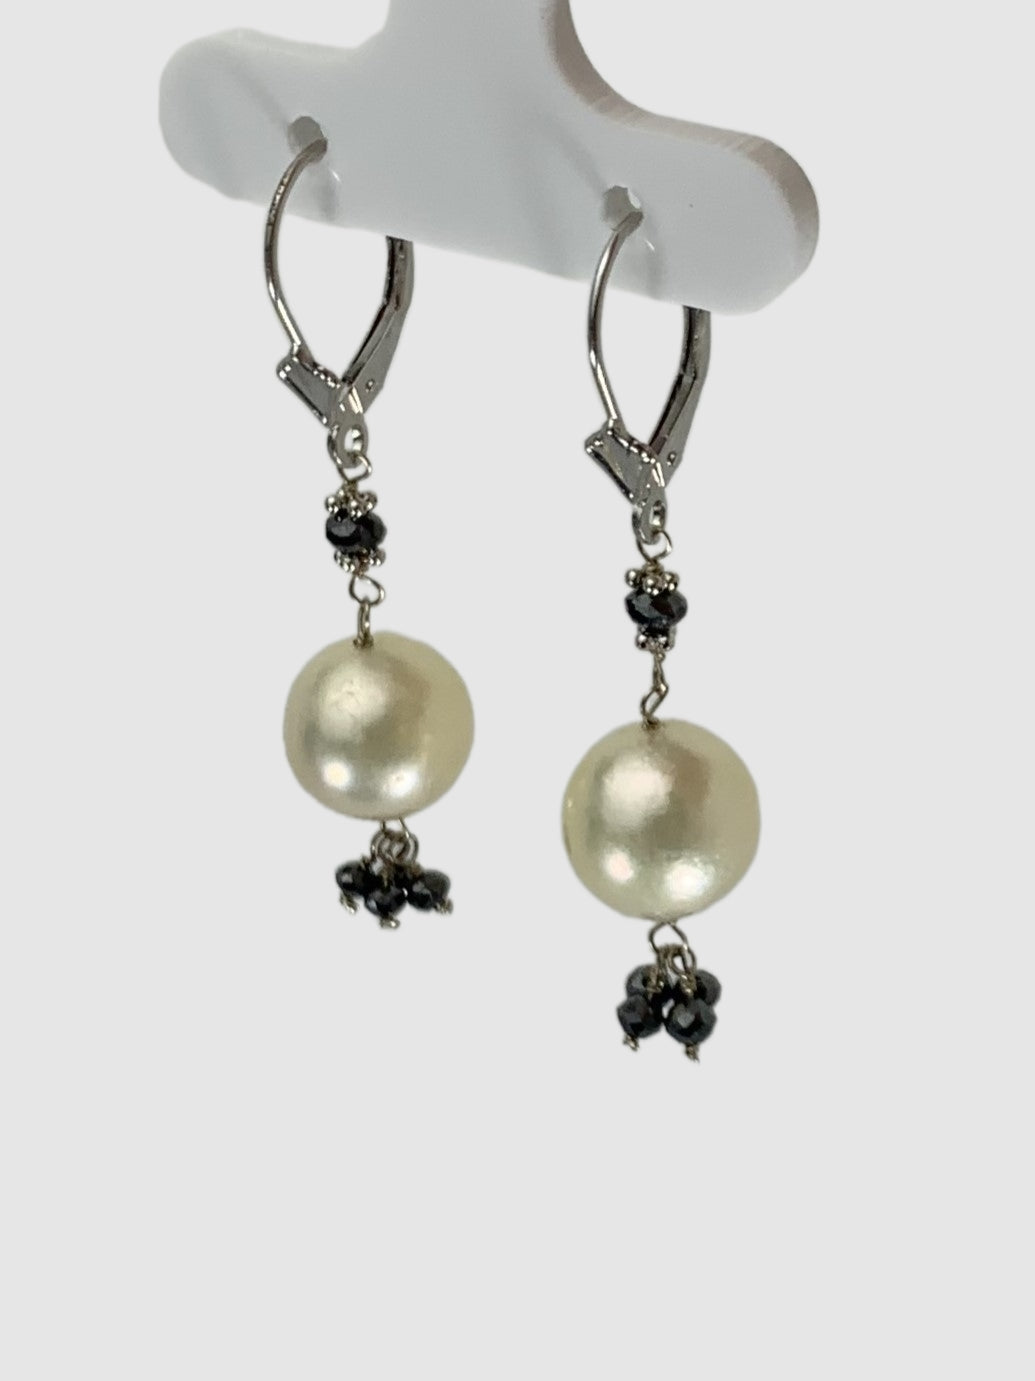 Pearl and Black Diamond Tassel Drop Earrings in 14KW - EAR-024-TSPRLDIA14W-WHBLK 1.10ctw